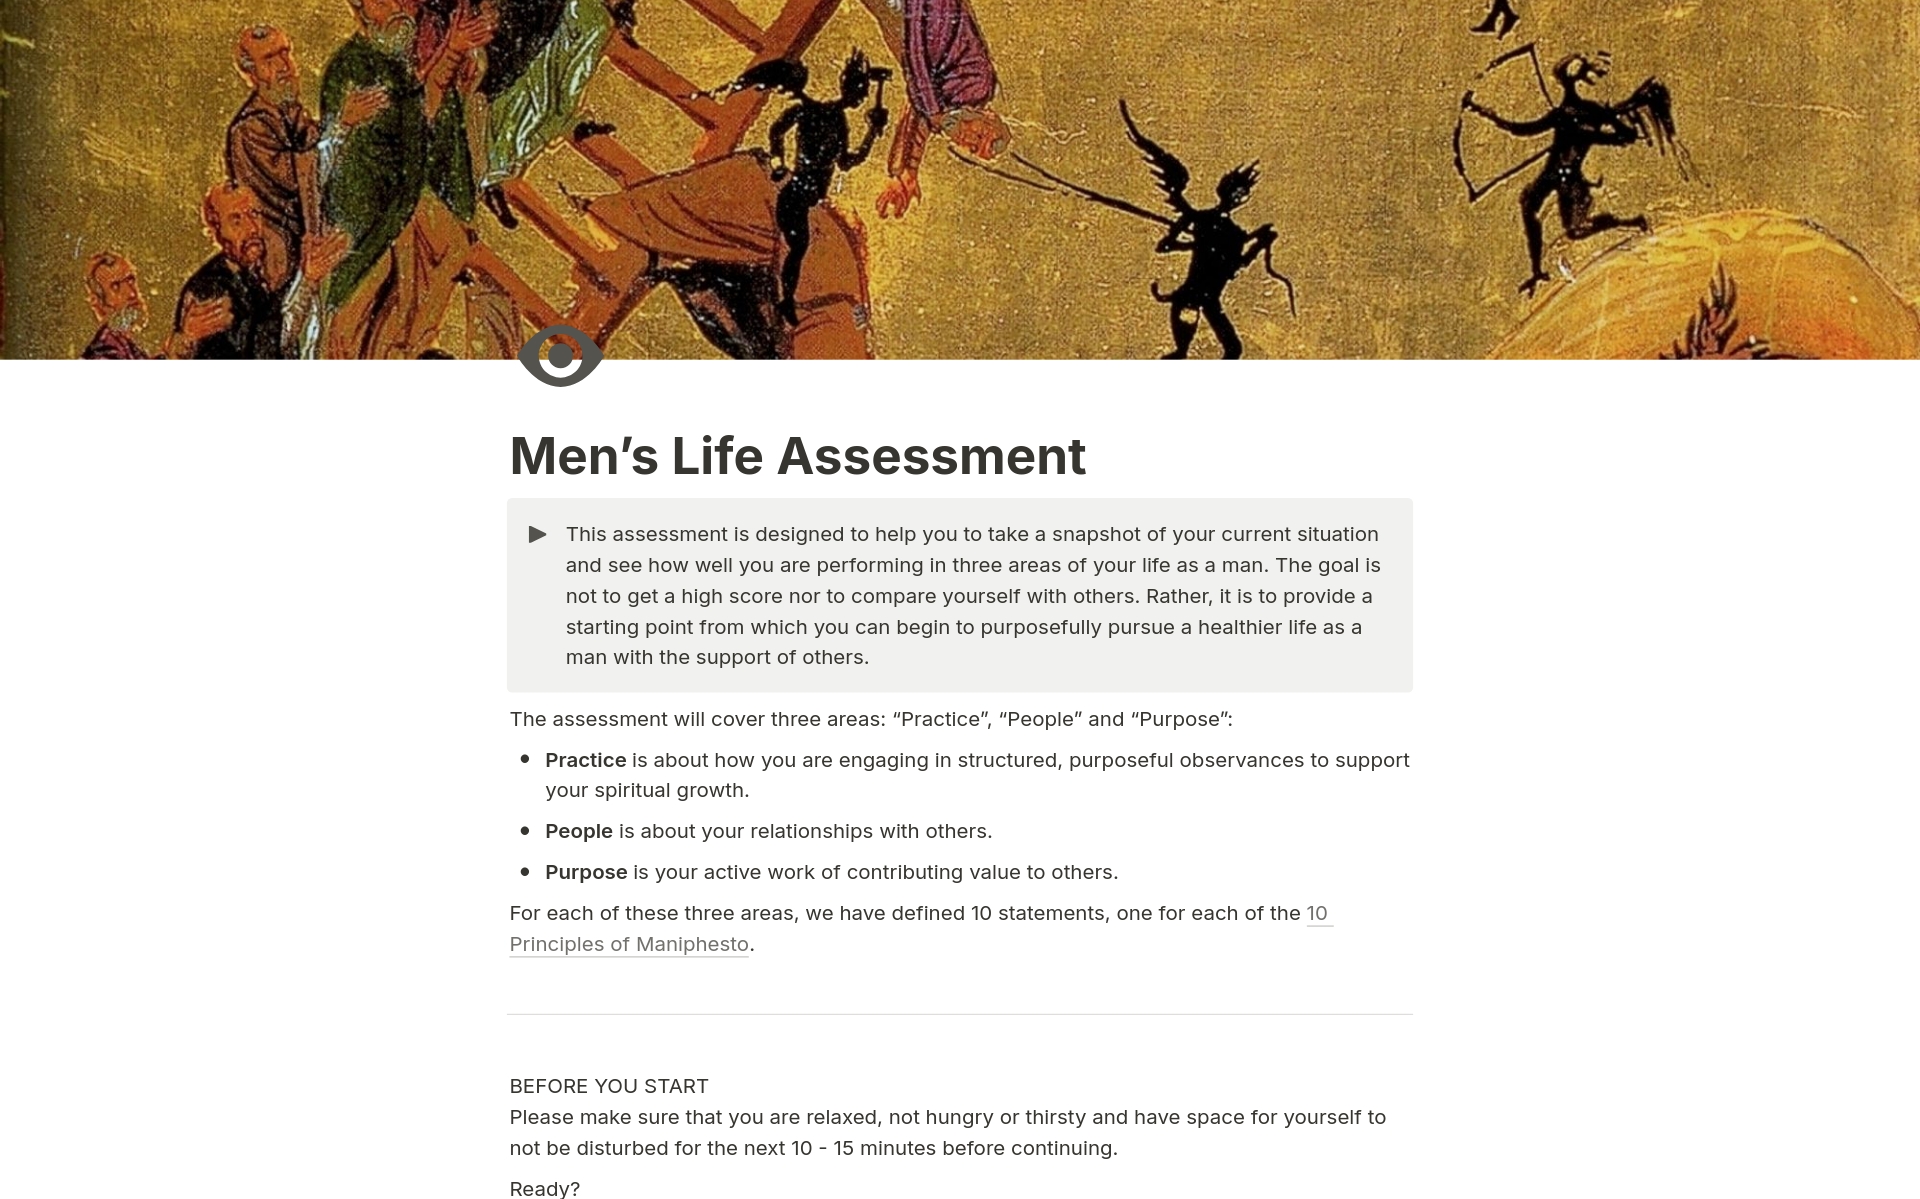 Aperçu du modèle de Men's Life Assessment